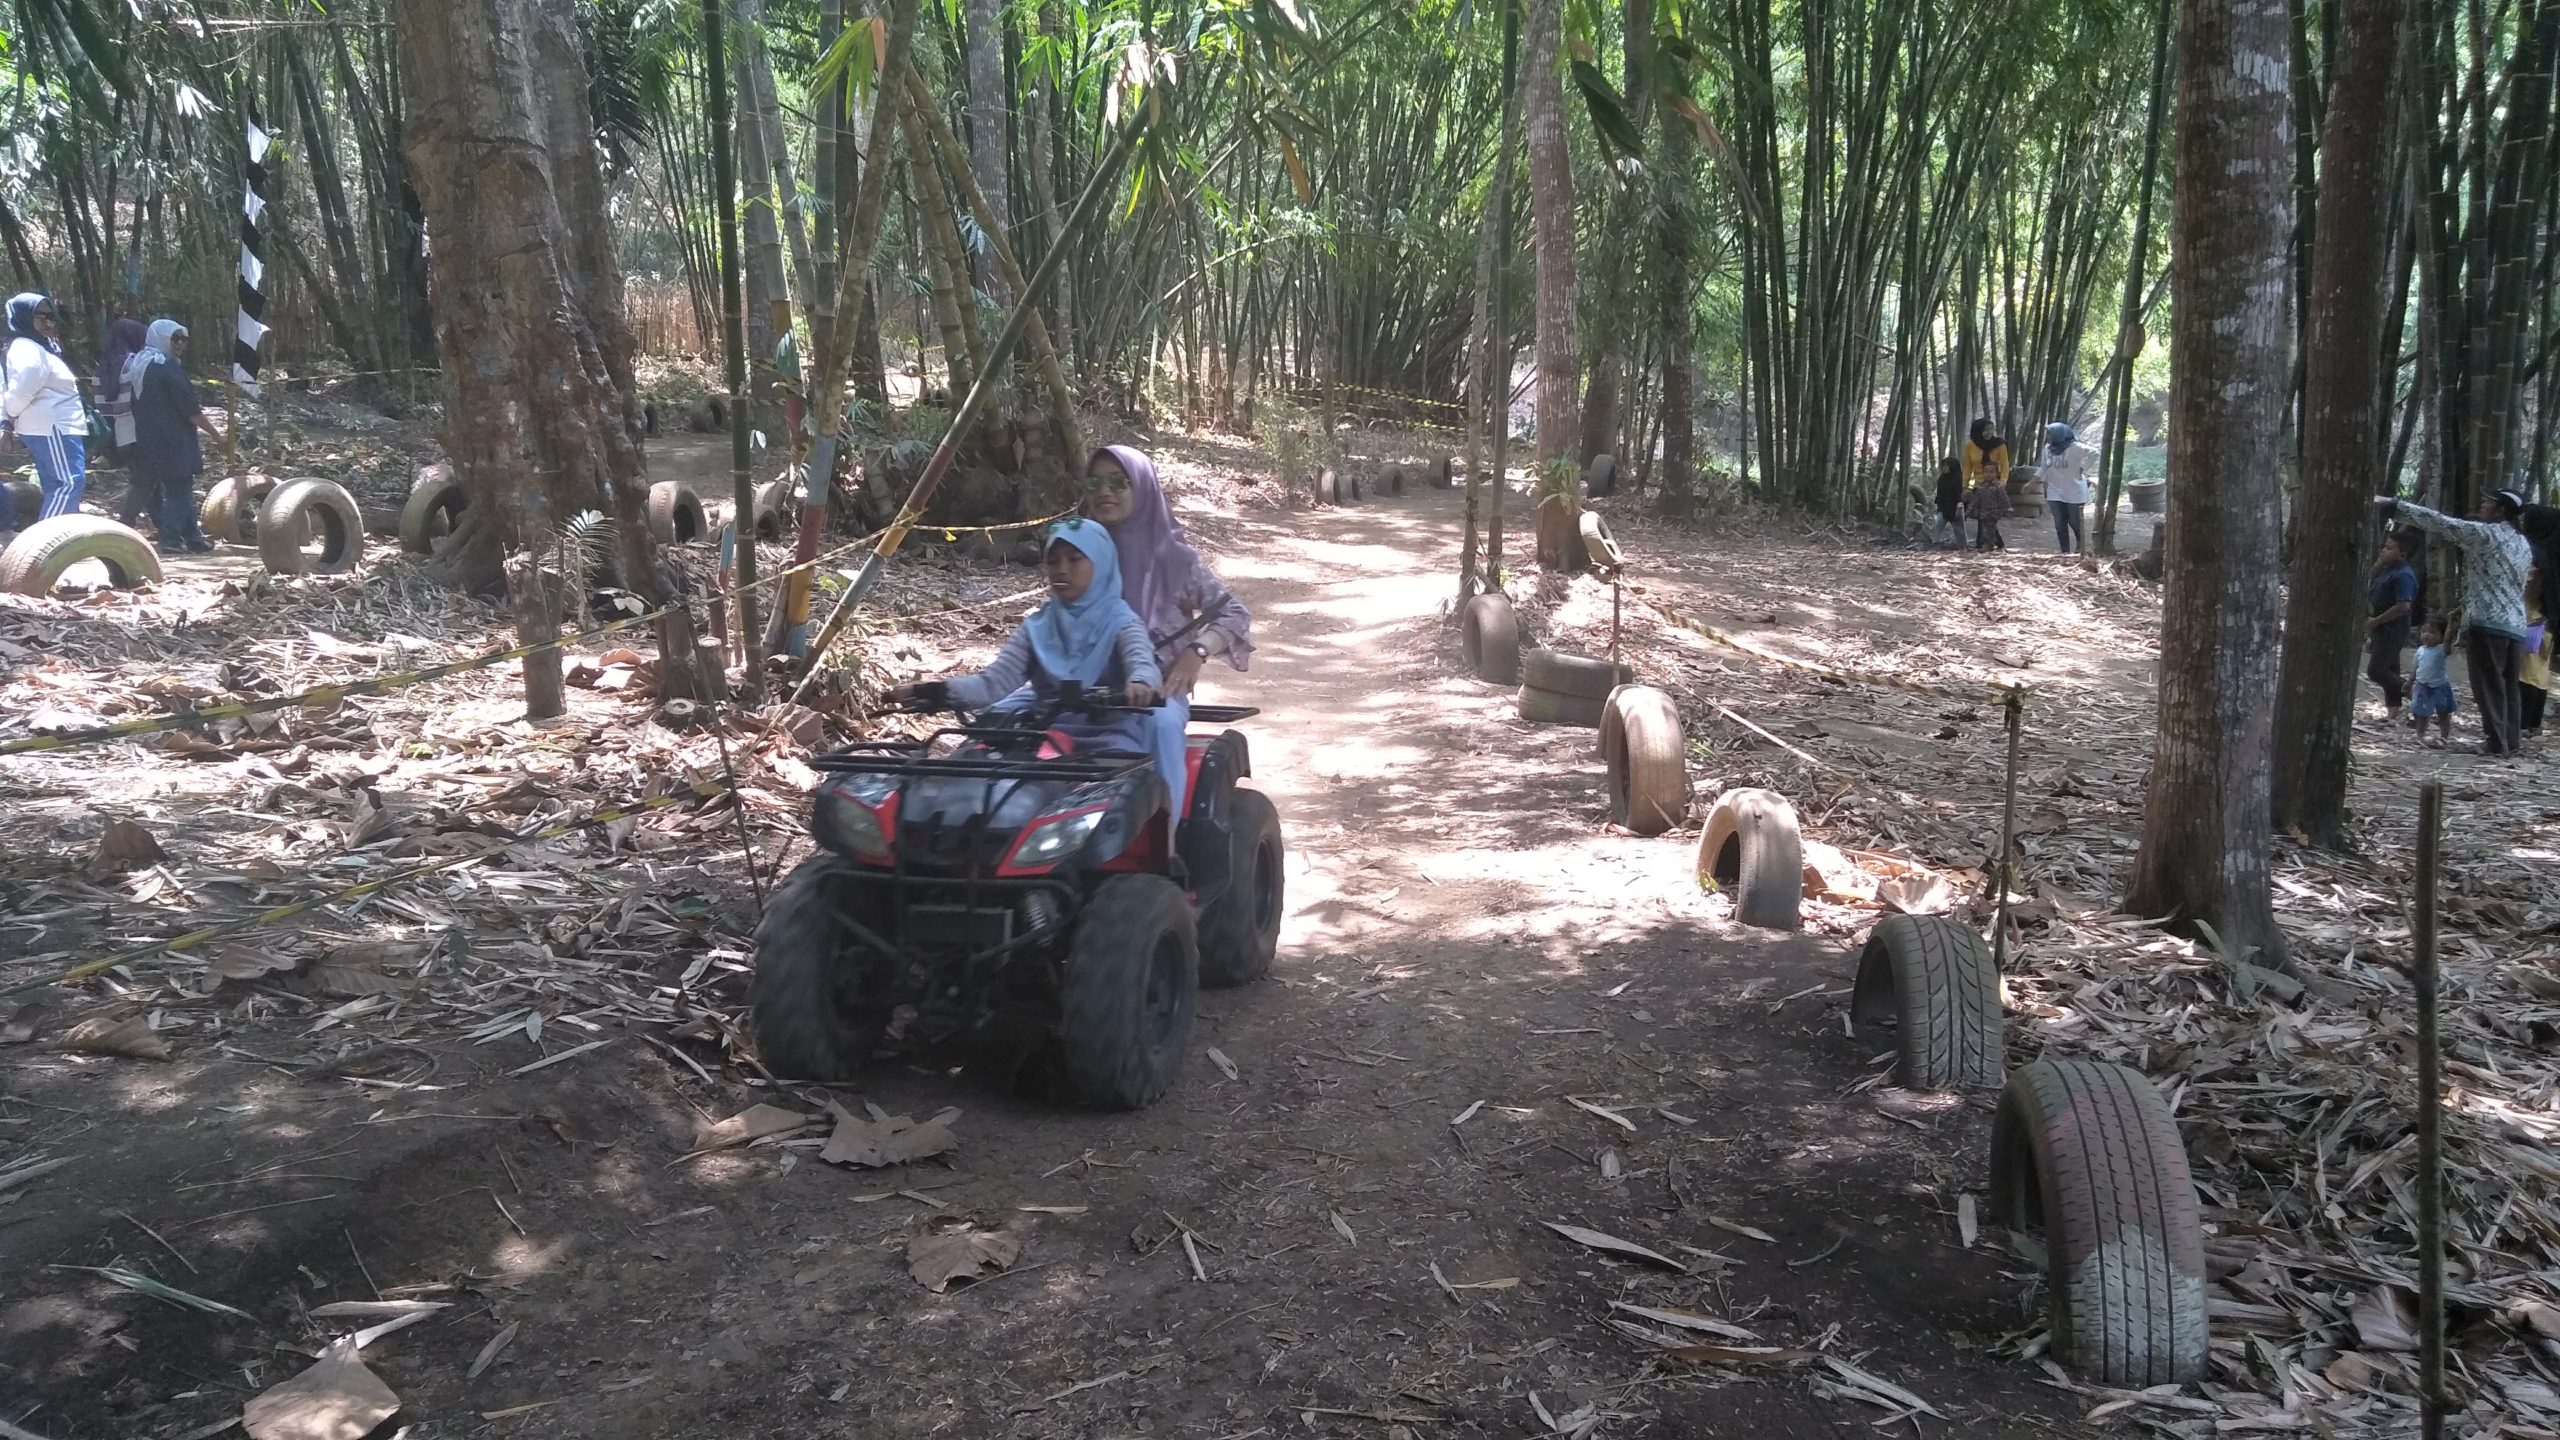 Arboretum bambu juga menjadi sirkuit motor ATV, digunakan bermain para pengunjung. Foto: Eko Widianto/ Mongabay Indonesia